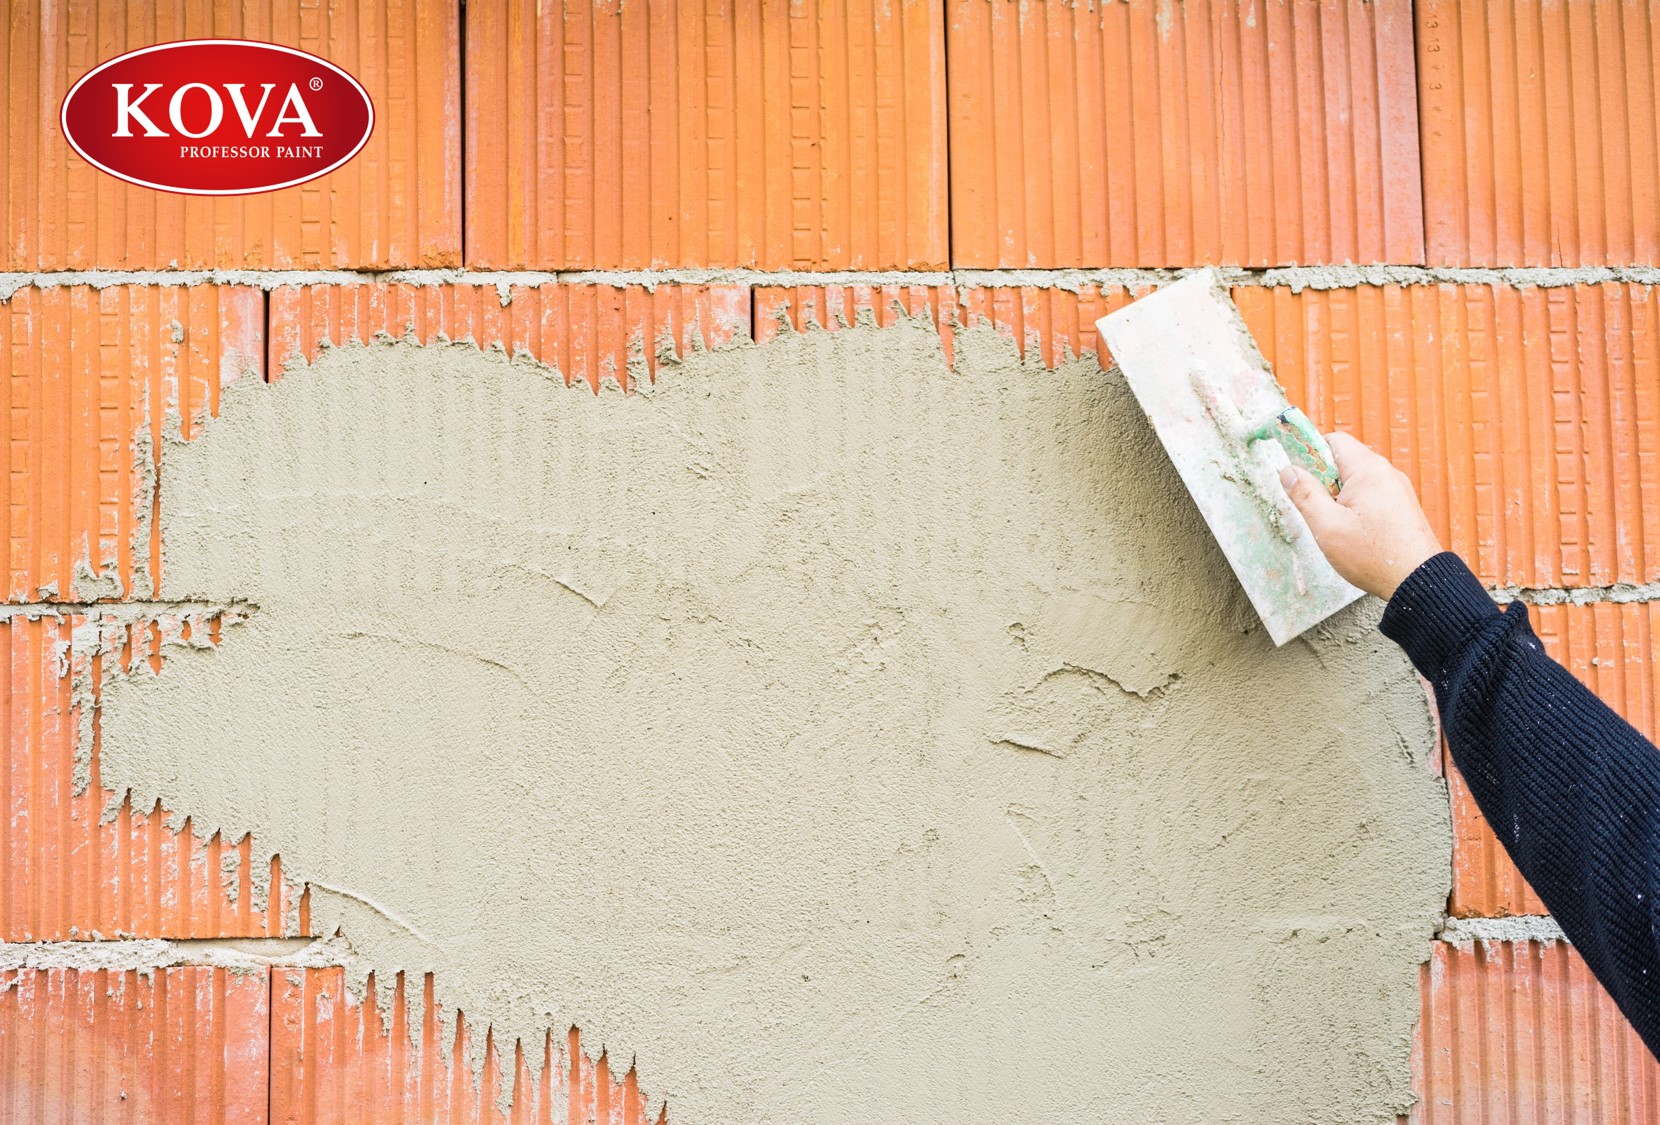 Chất chống thấm giúp ngôi nhà của bạn luôn khô ráo và ấm cúng. Để đảm bảo chất lượng công trình, bạn nên sử dụng các chất chống thấm chất lượng cao. Hình ảnh sẽ giúp bạn hiểu rõ hơn về công dụng của chất chống thấm.